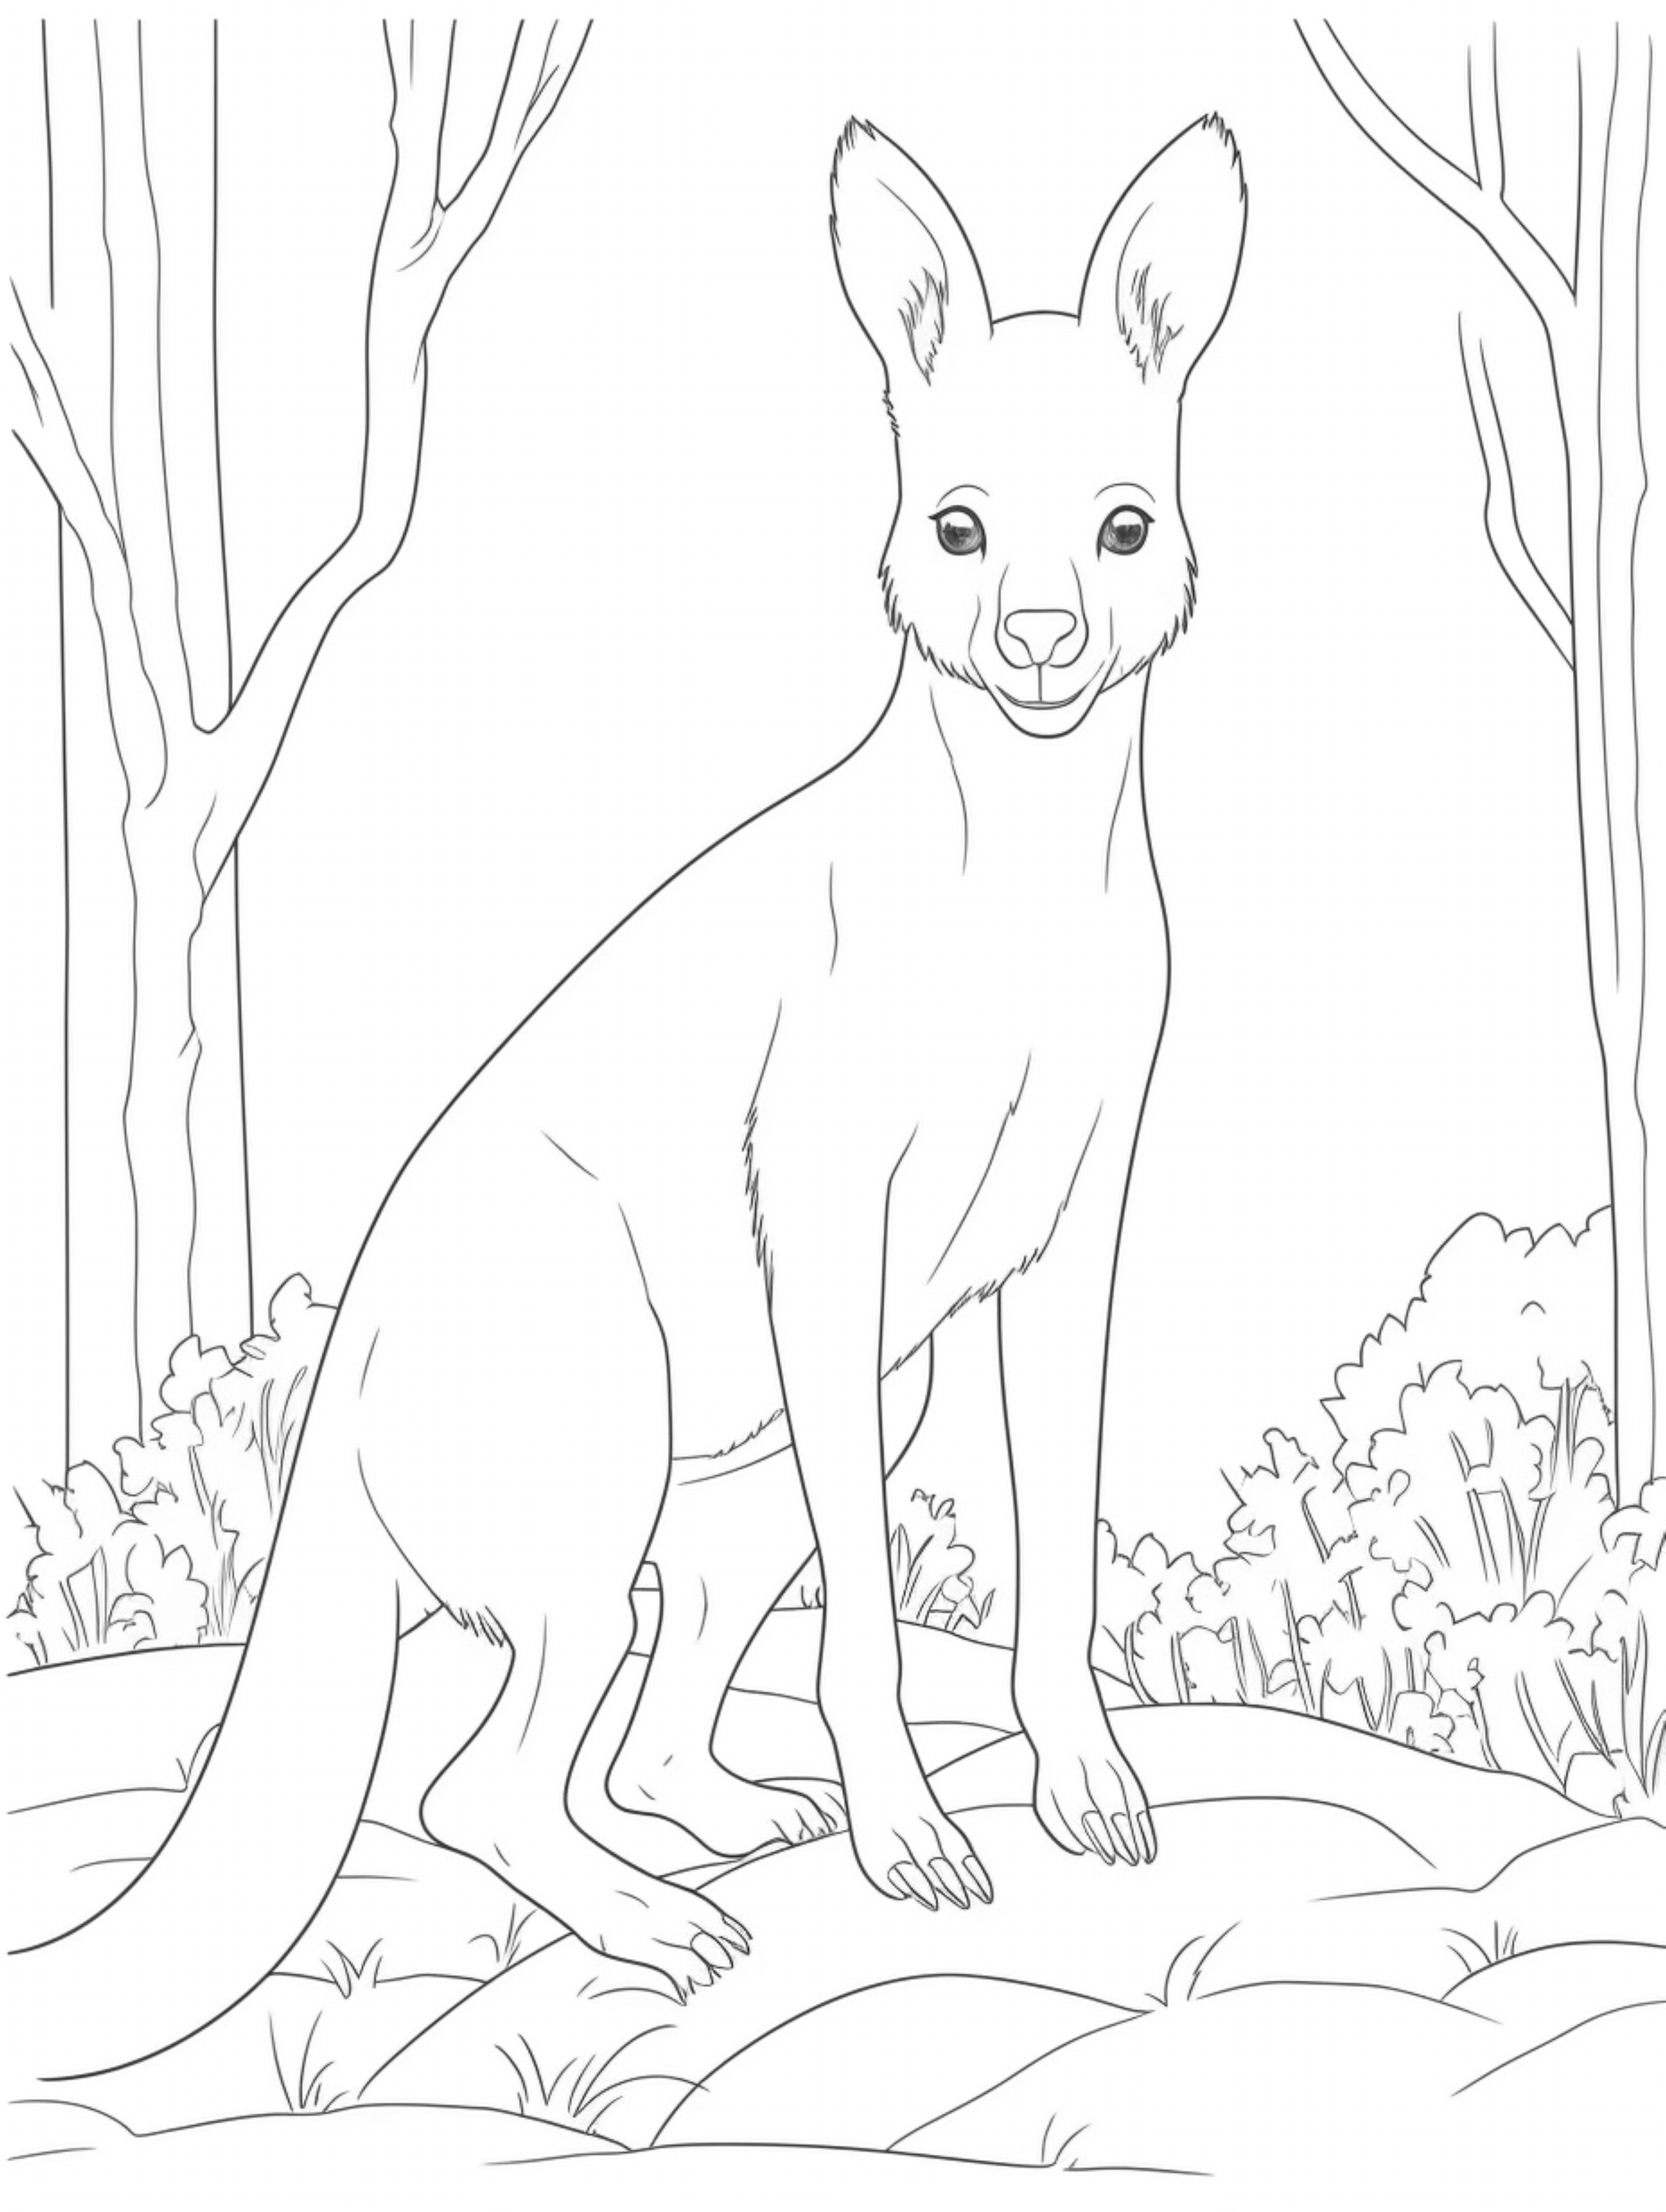 kangaroo coloring page